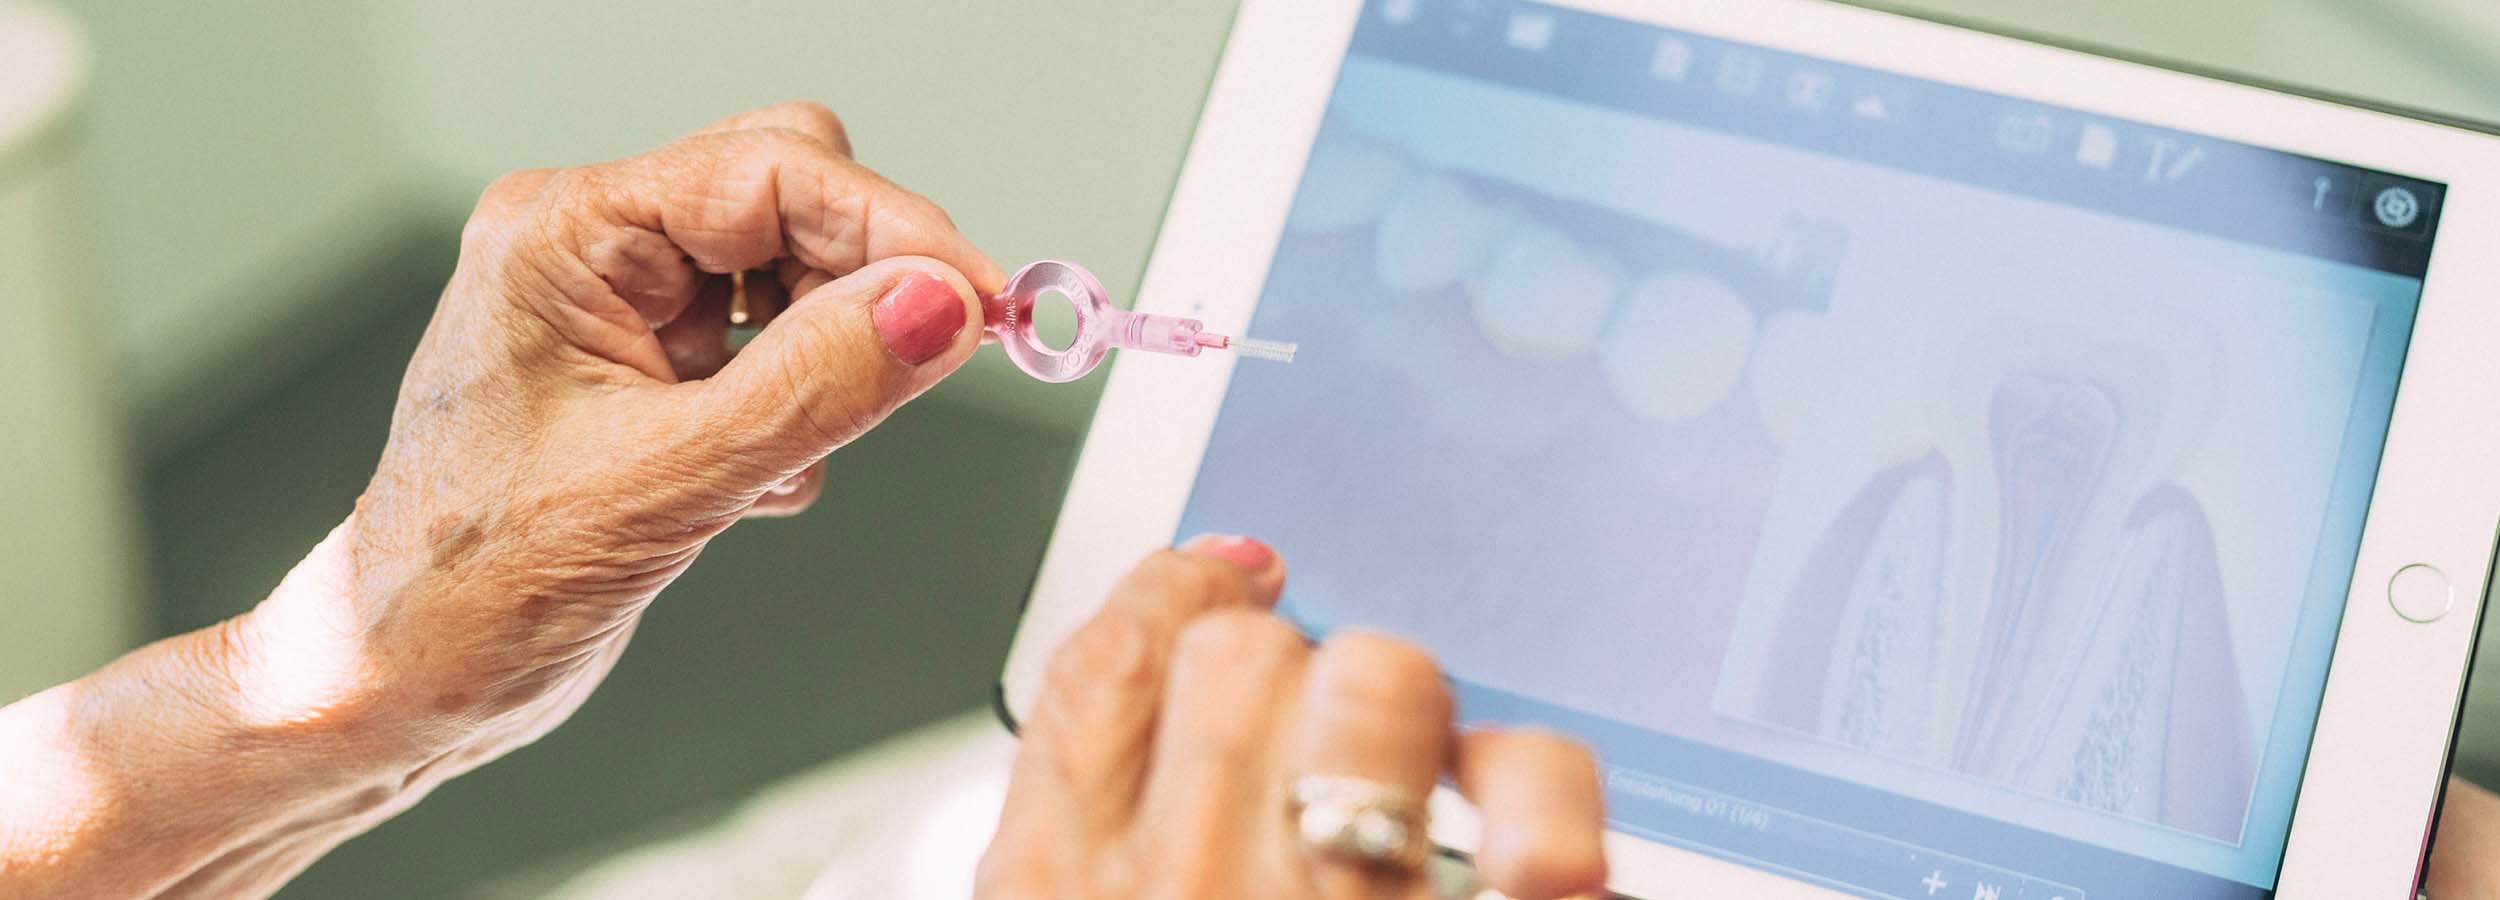 Bildschirm eines Tablets und eine Hand mit Zahnzwischenraumbürste (Interdentalbürste): Auf dem Bildschirm erscheinen stilisierte Zähne, hier wird erklärt, wie richtige Zahnpflege Parodontitis vorbeugen kann.